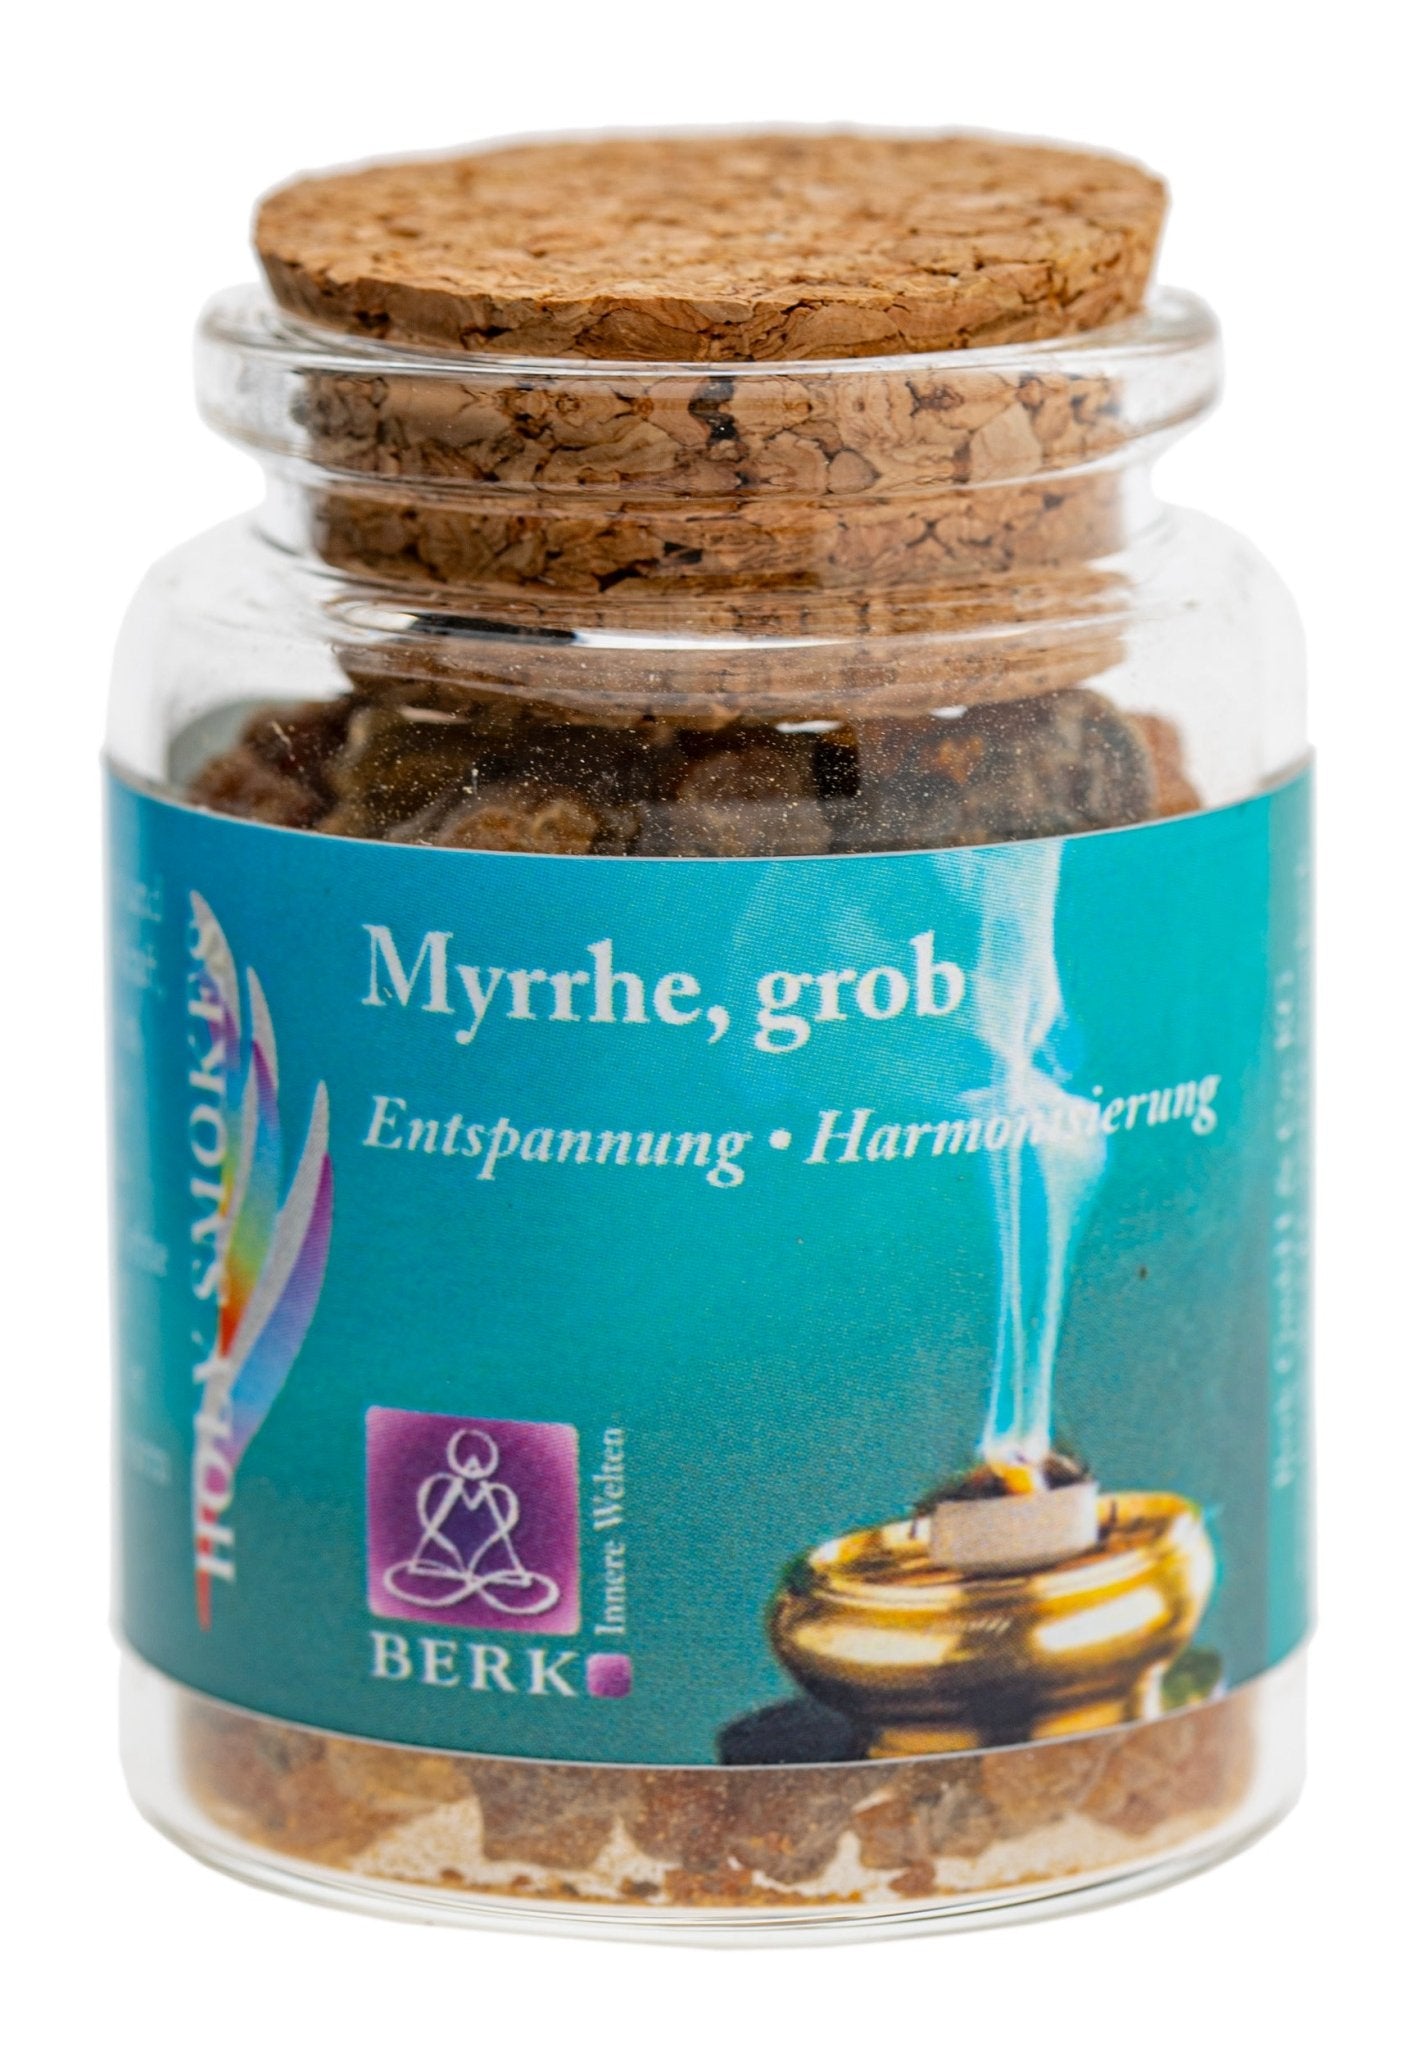 Myrrhe, grob - Das Raeucherwerk